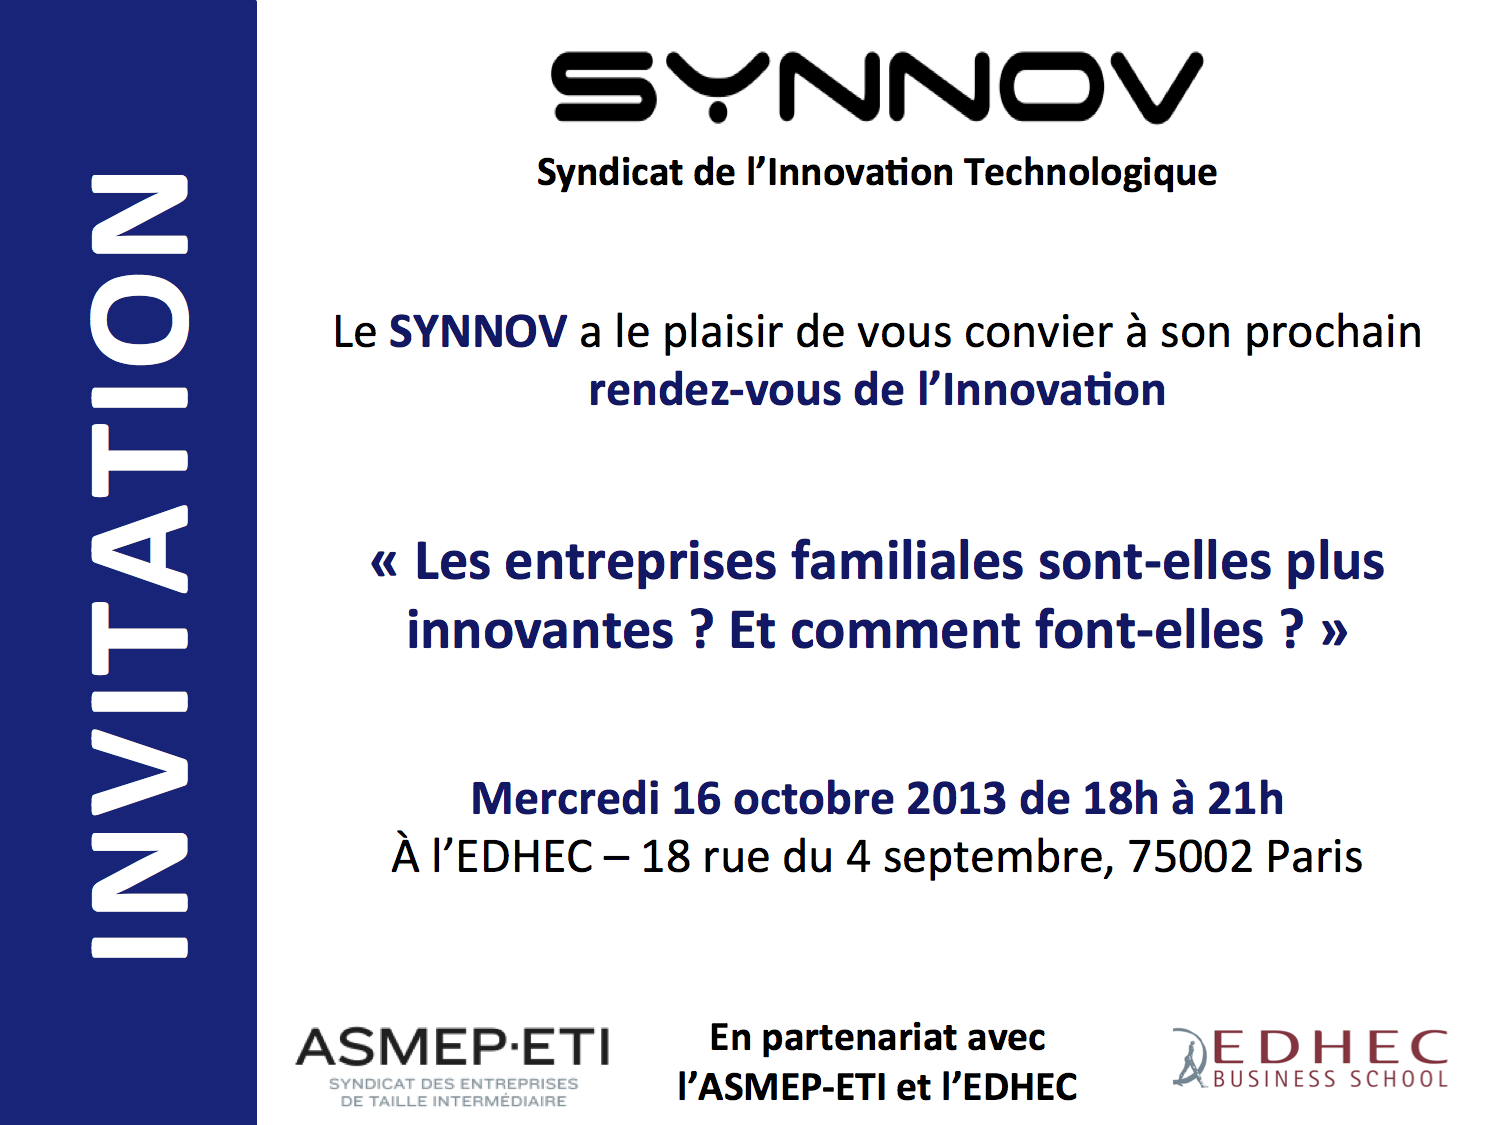 Invitation aux rendez vous de l'innovation du SYNNOV (Syndicat de l'Innovation Technologique)